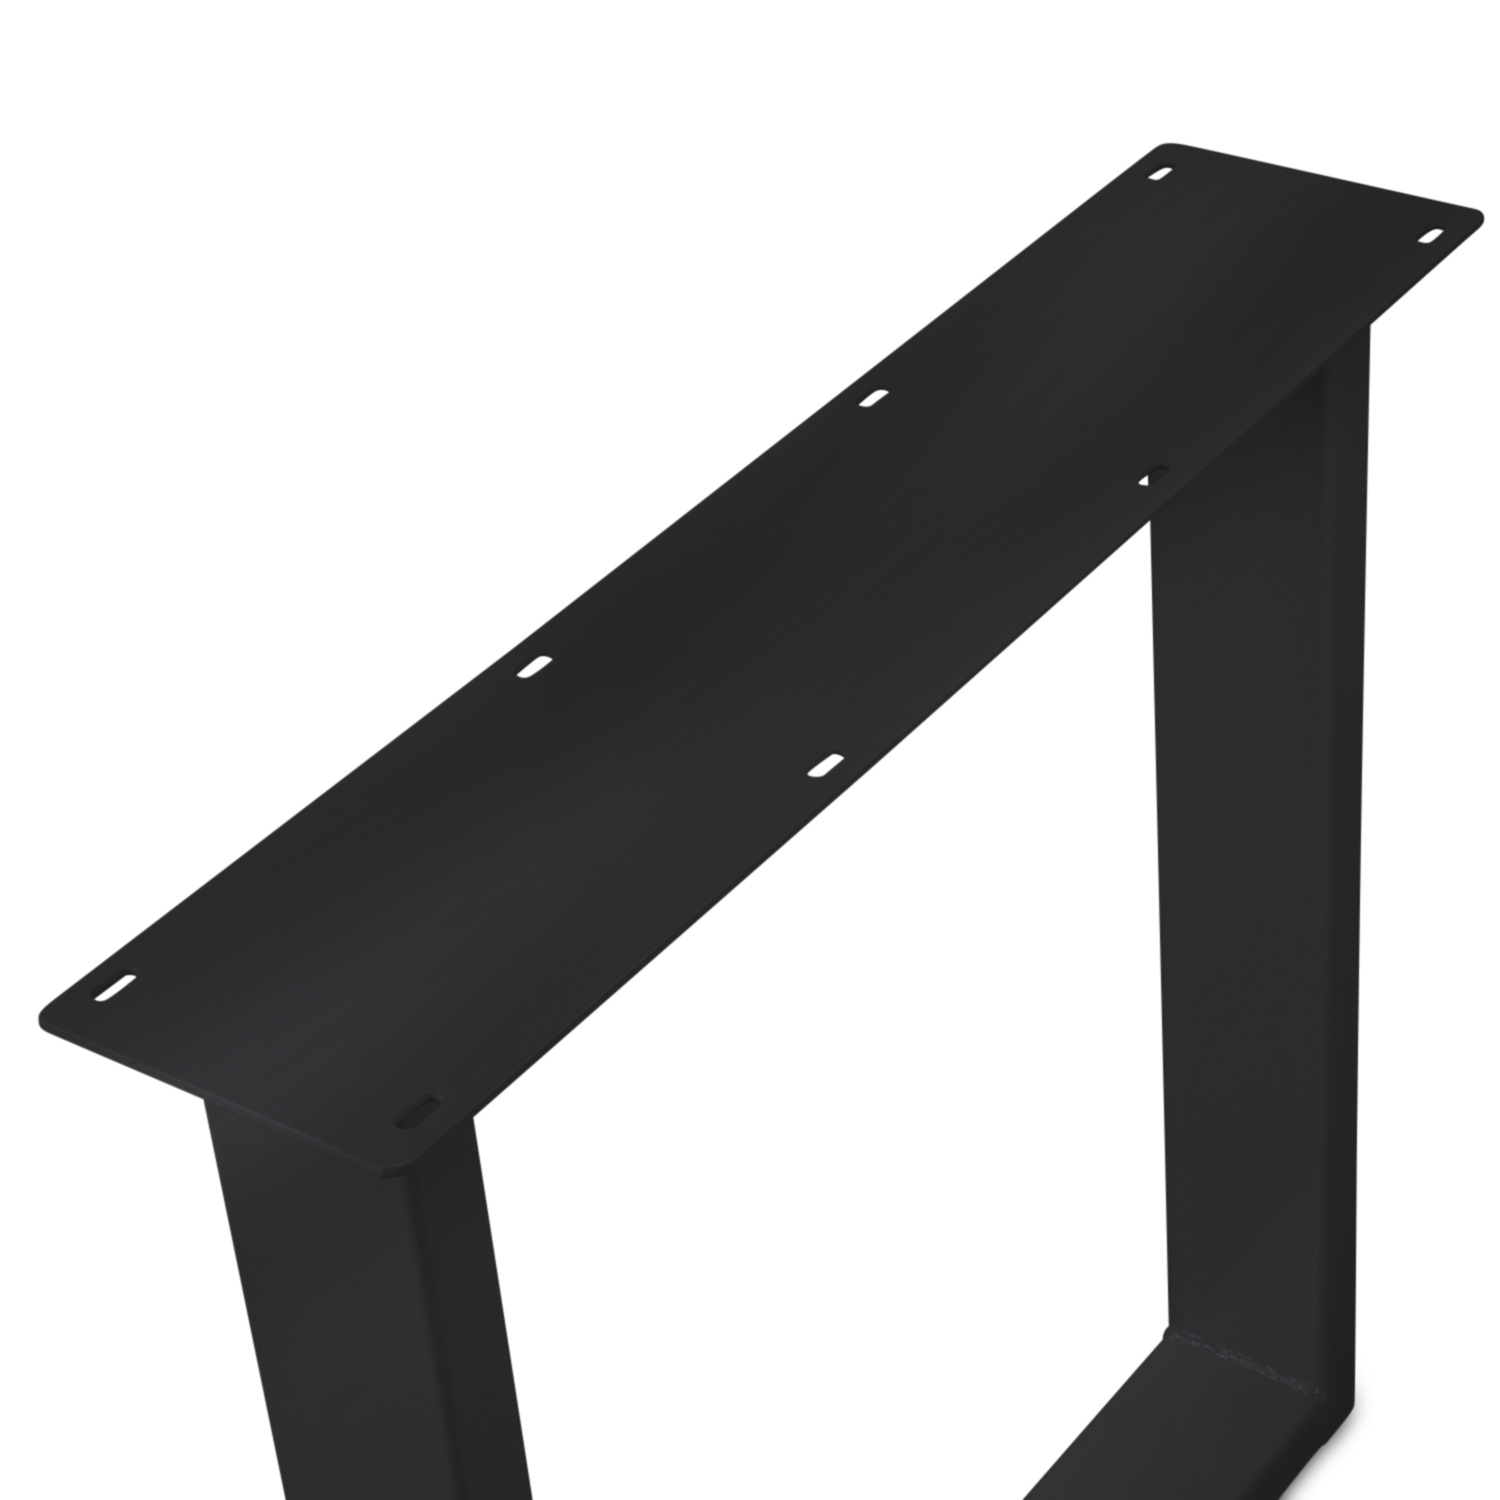  Tischbeine U Metall elegant SET (2 Stück) - 10x4 cm - 78 cm breit - 72 cm hoch - U-form Tischkufen / Tischgestell beschichtet - Schwarz